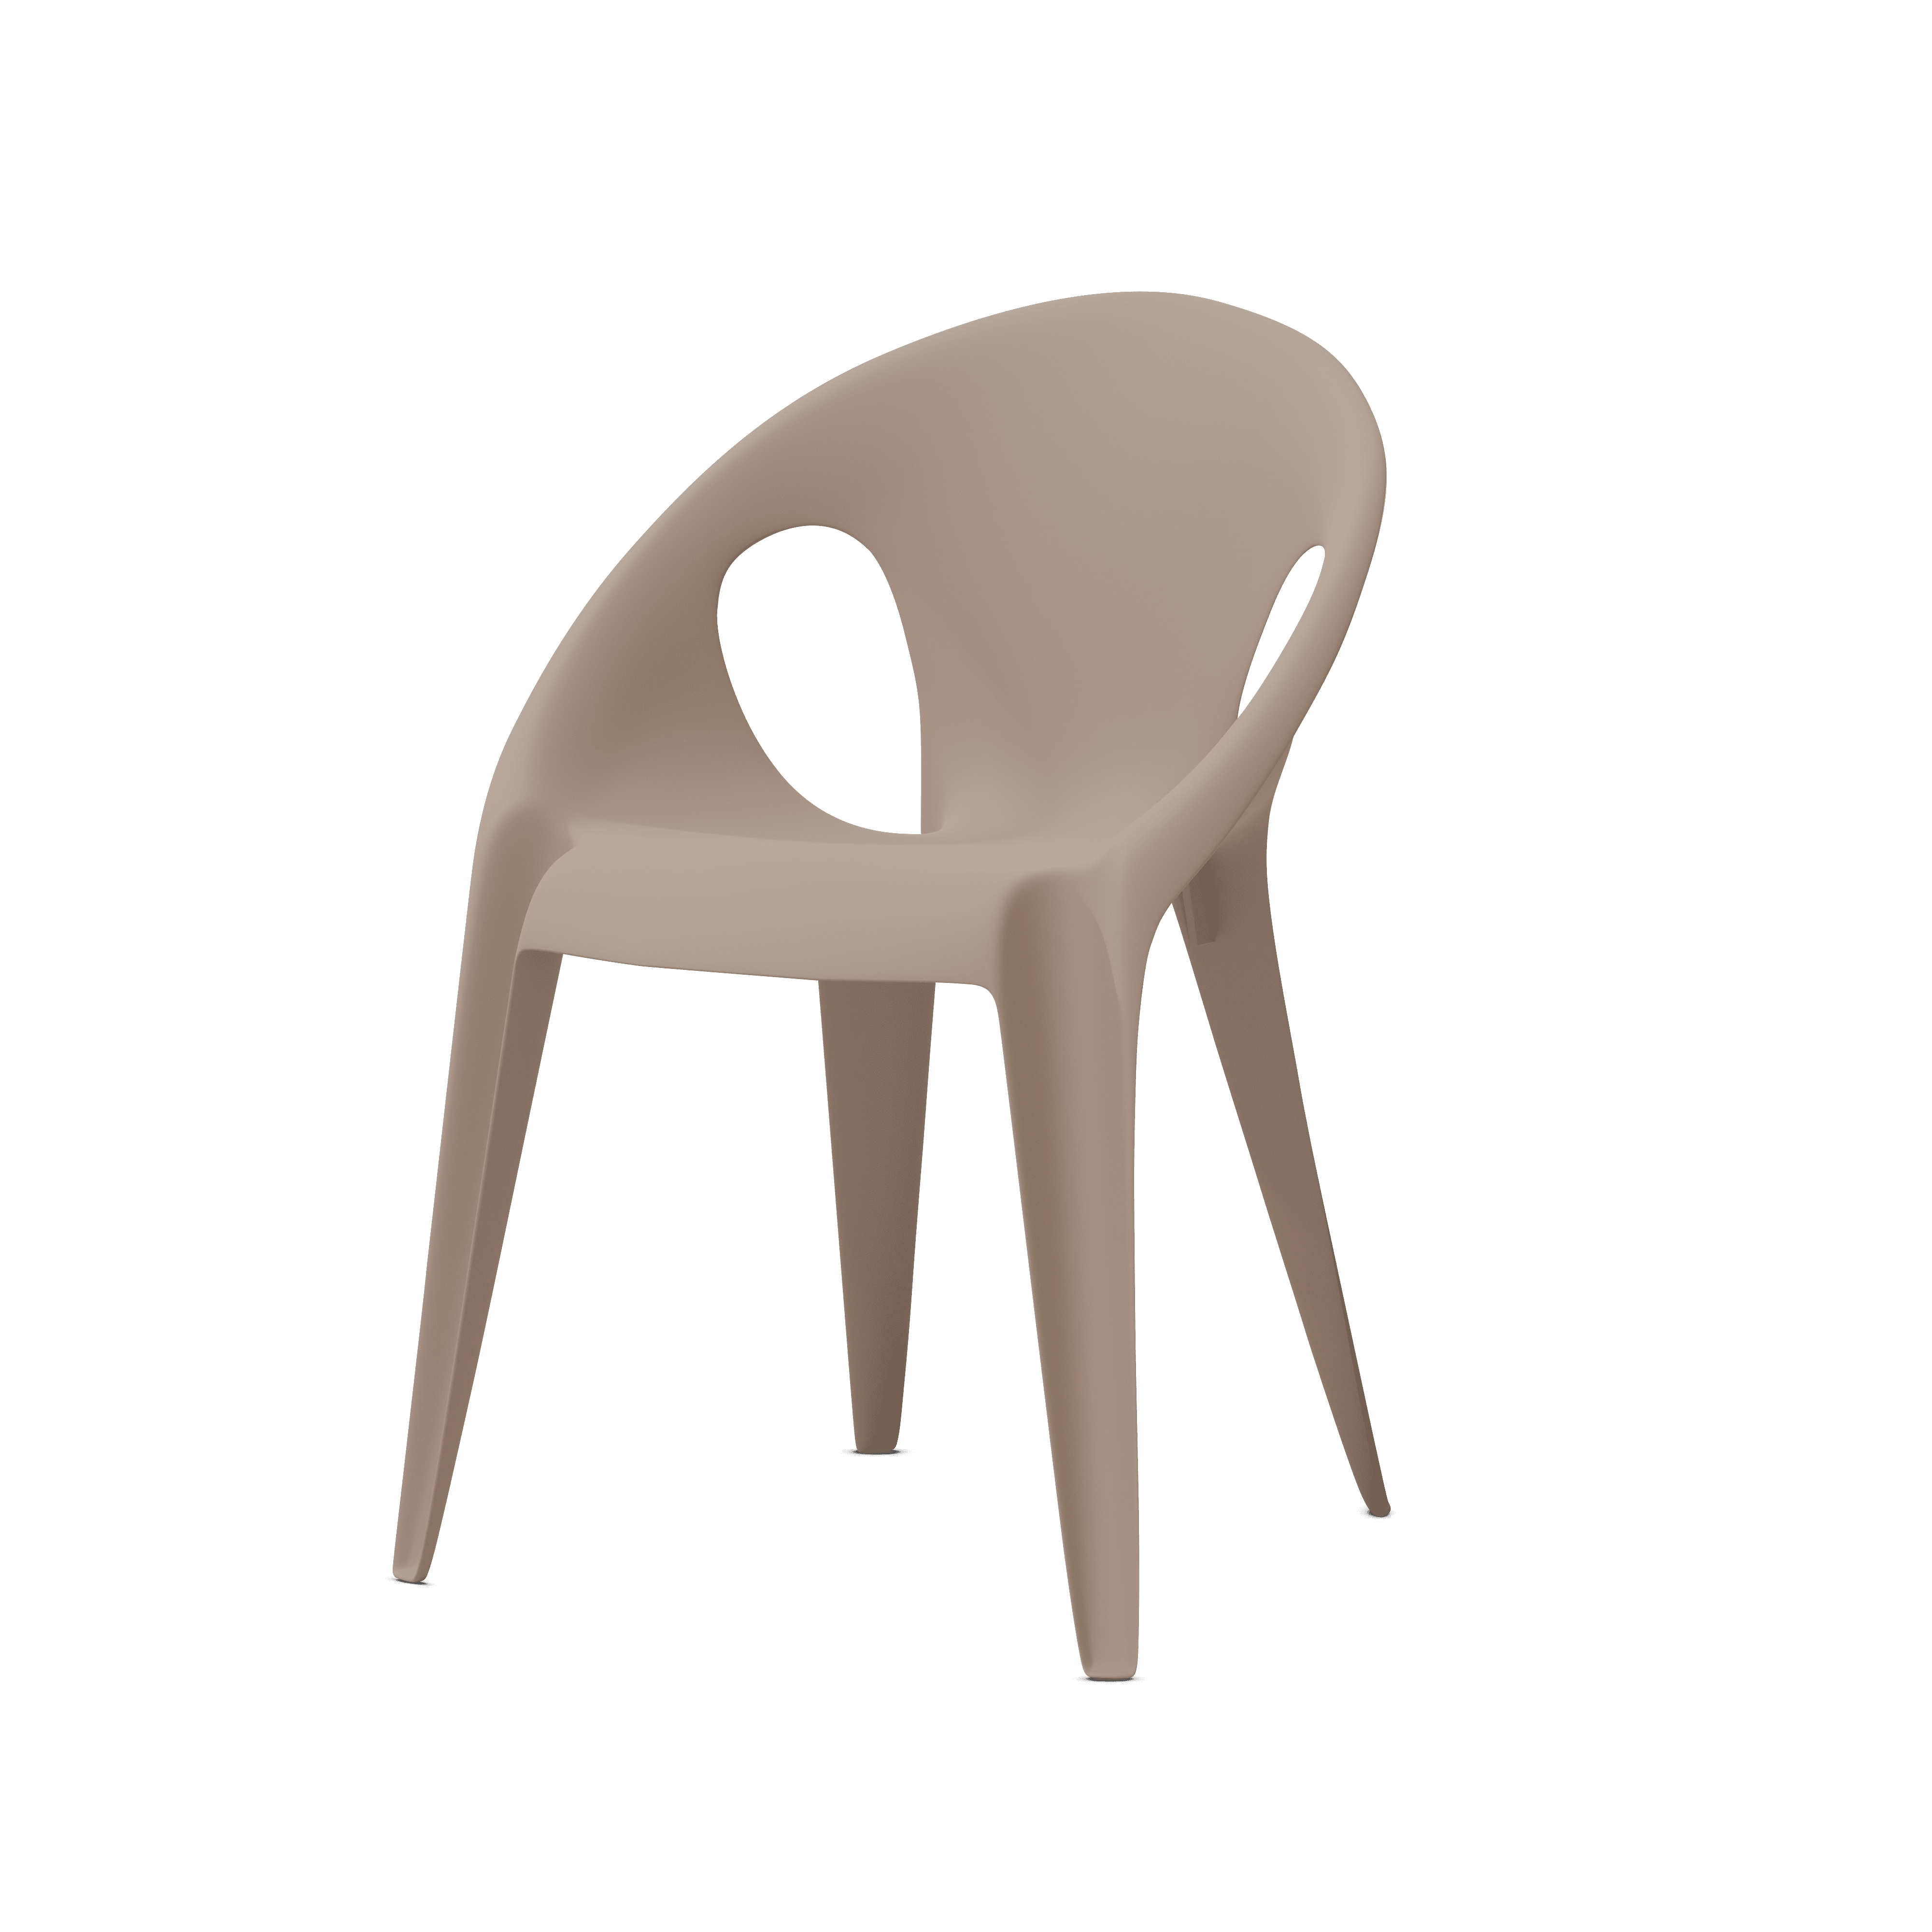 Bell Chair